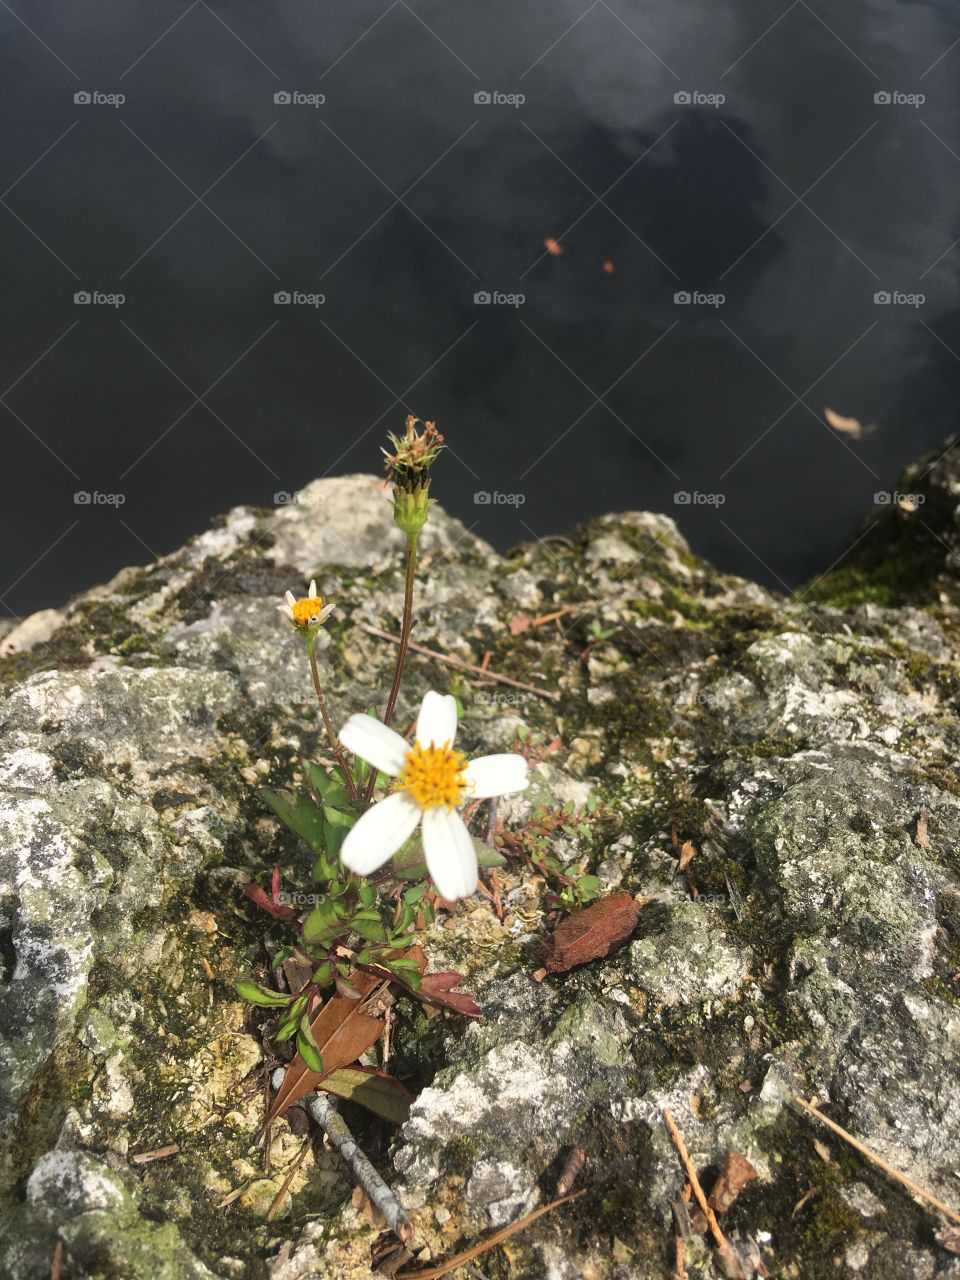 Flower on a rock